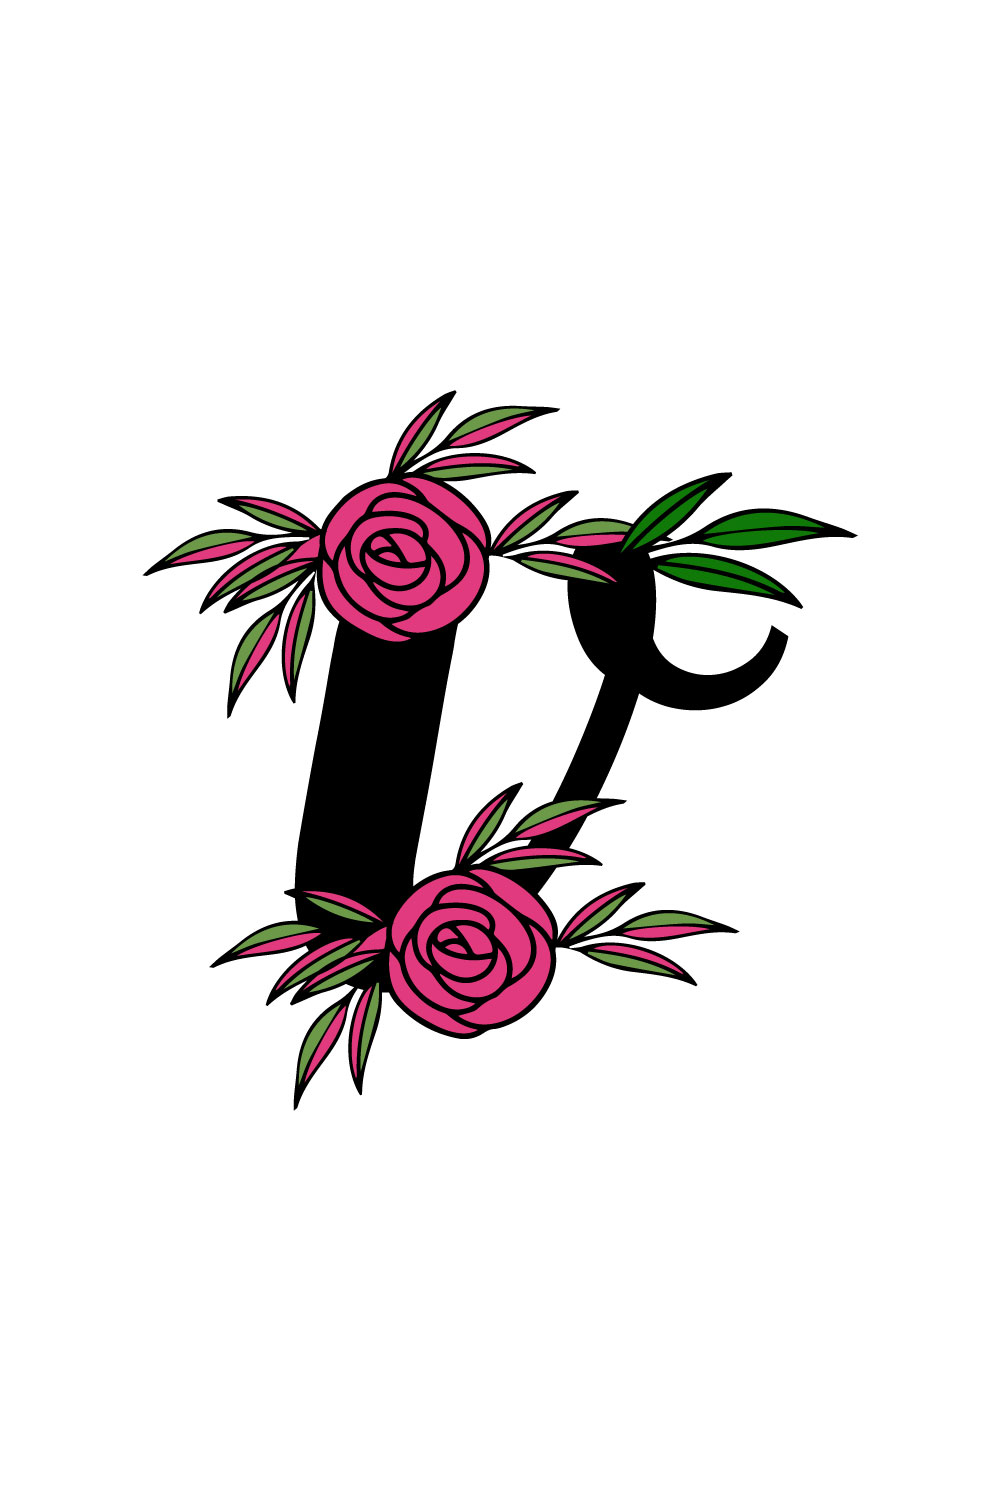 Free V rosy floral leaf logo pinterest preview image.